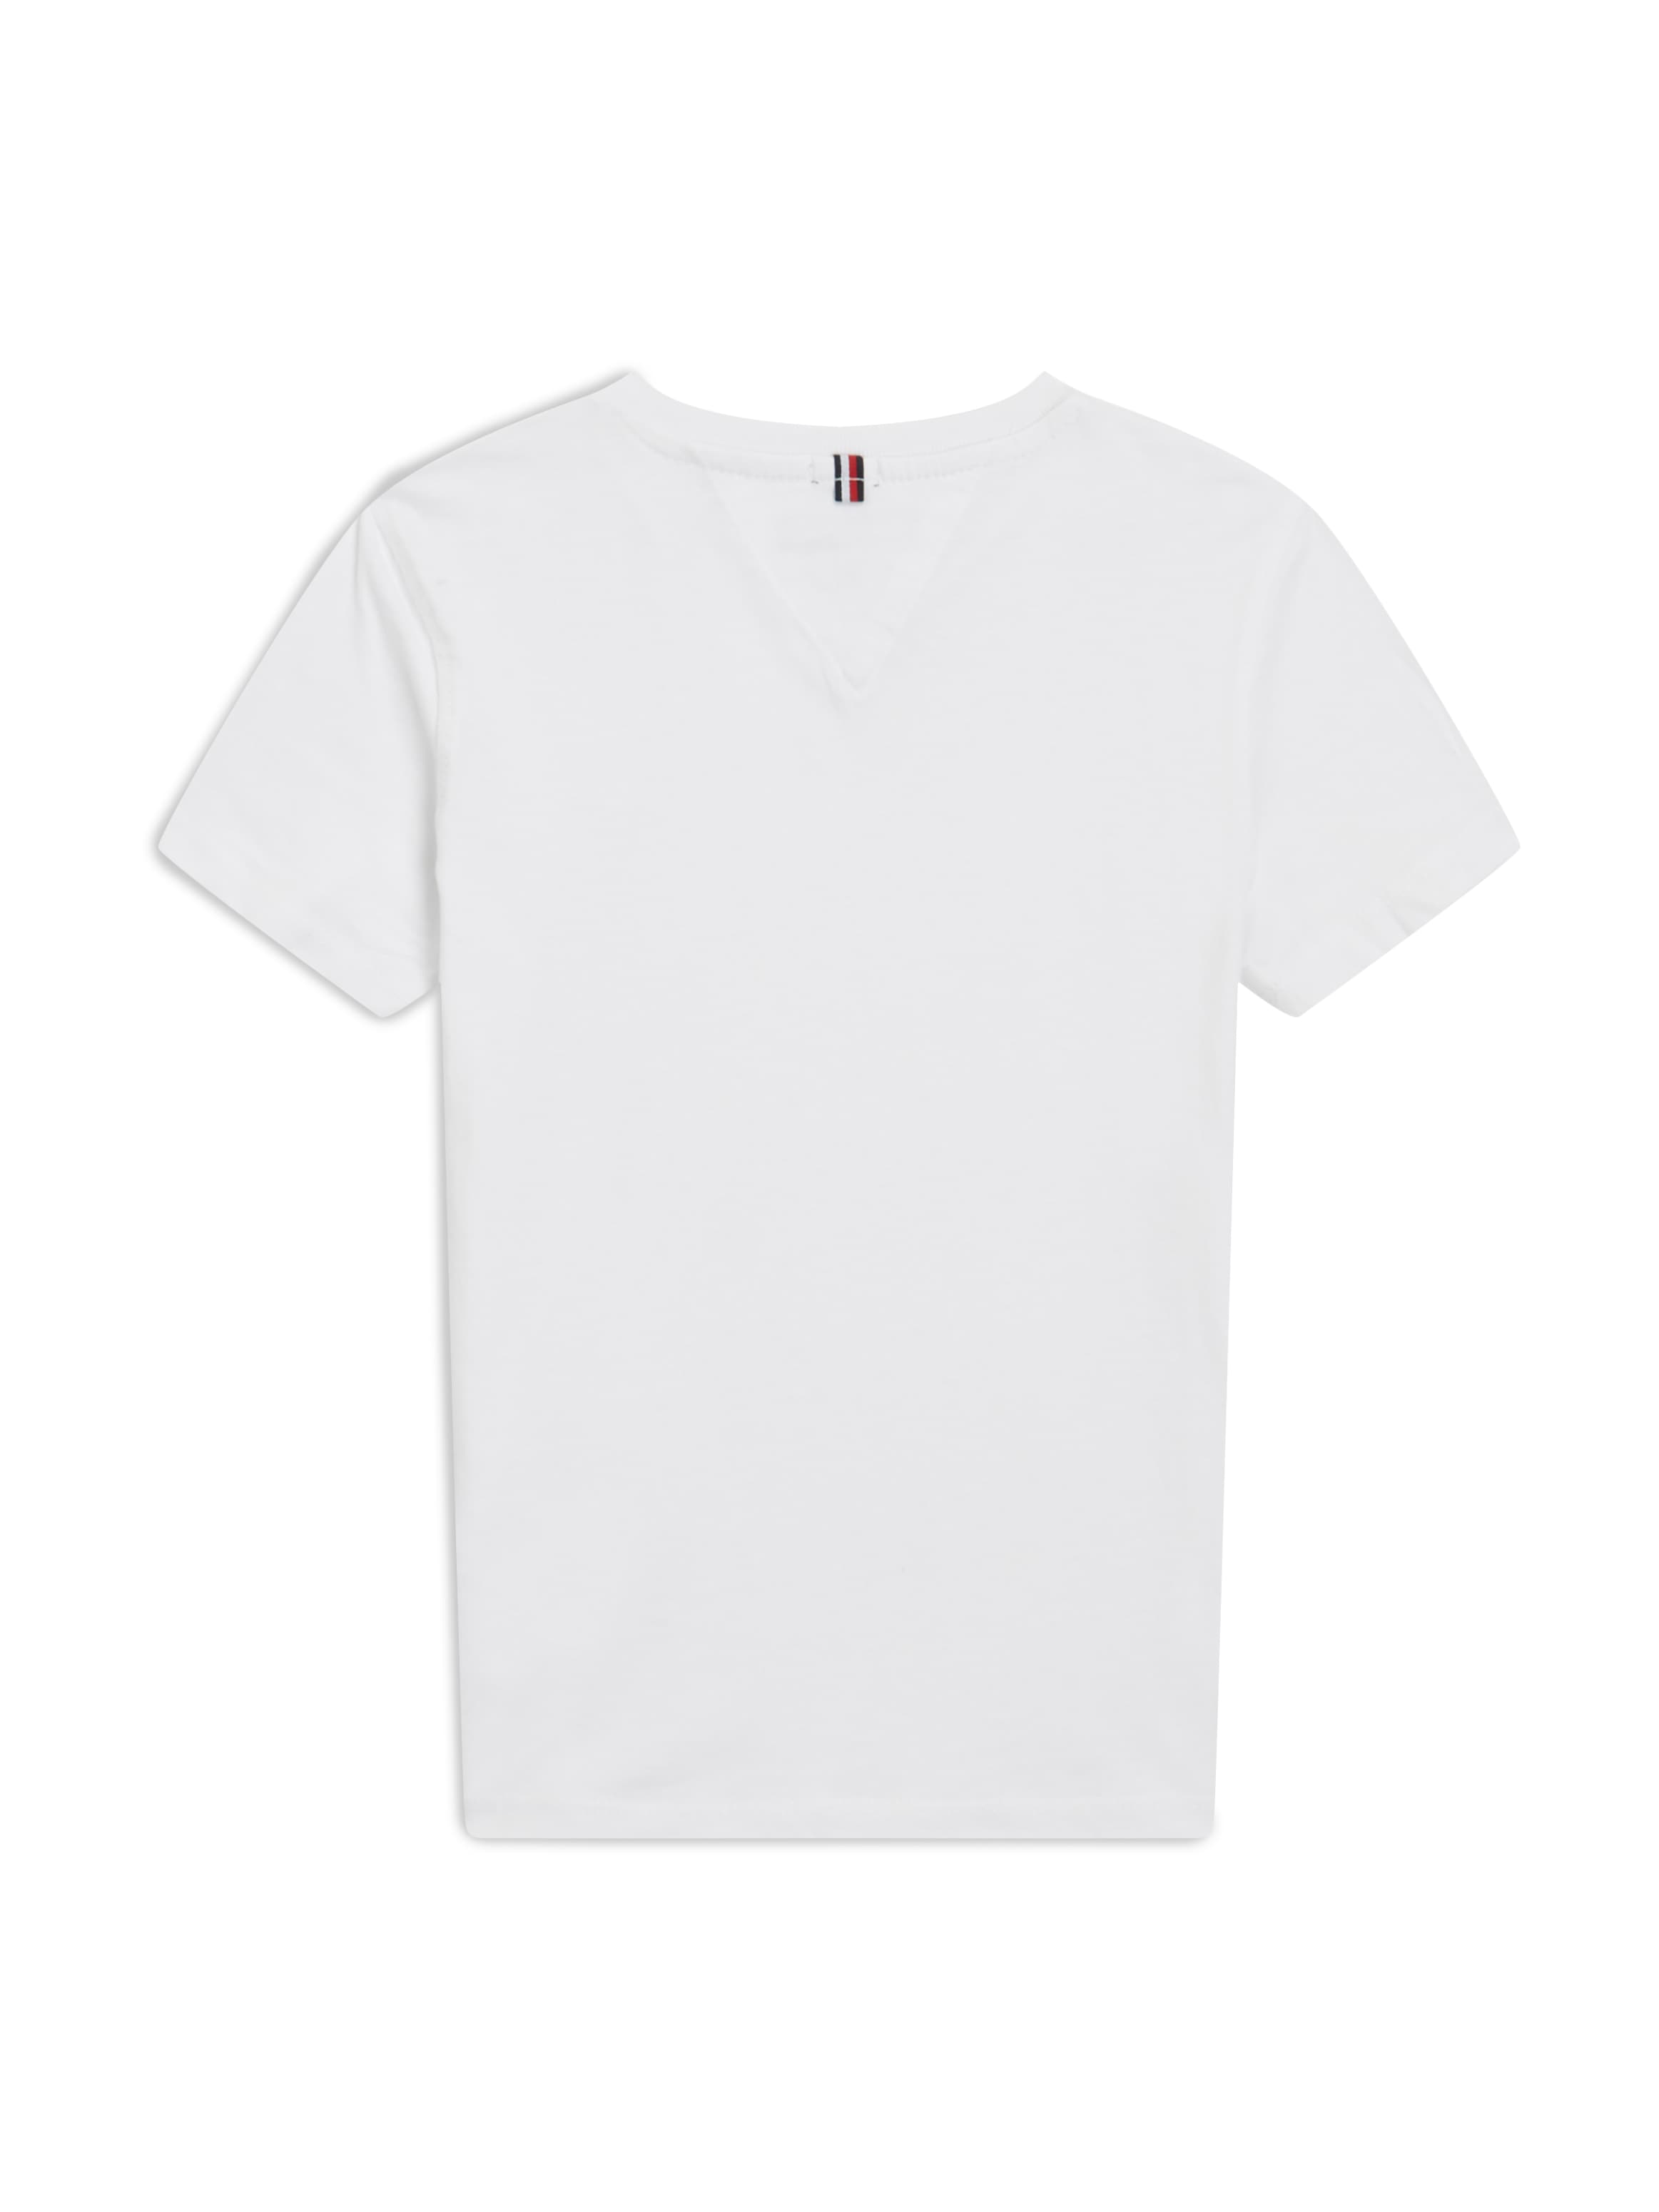 KNIT Hilfiger »BOYS V-Shirt Flag bei Tommy VN mit Tommy online S/S«, BASIC Hilfiger Logo-